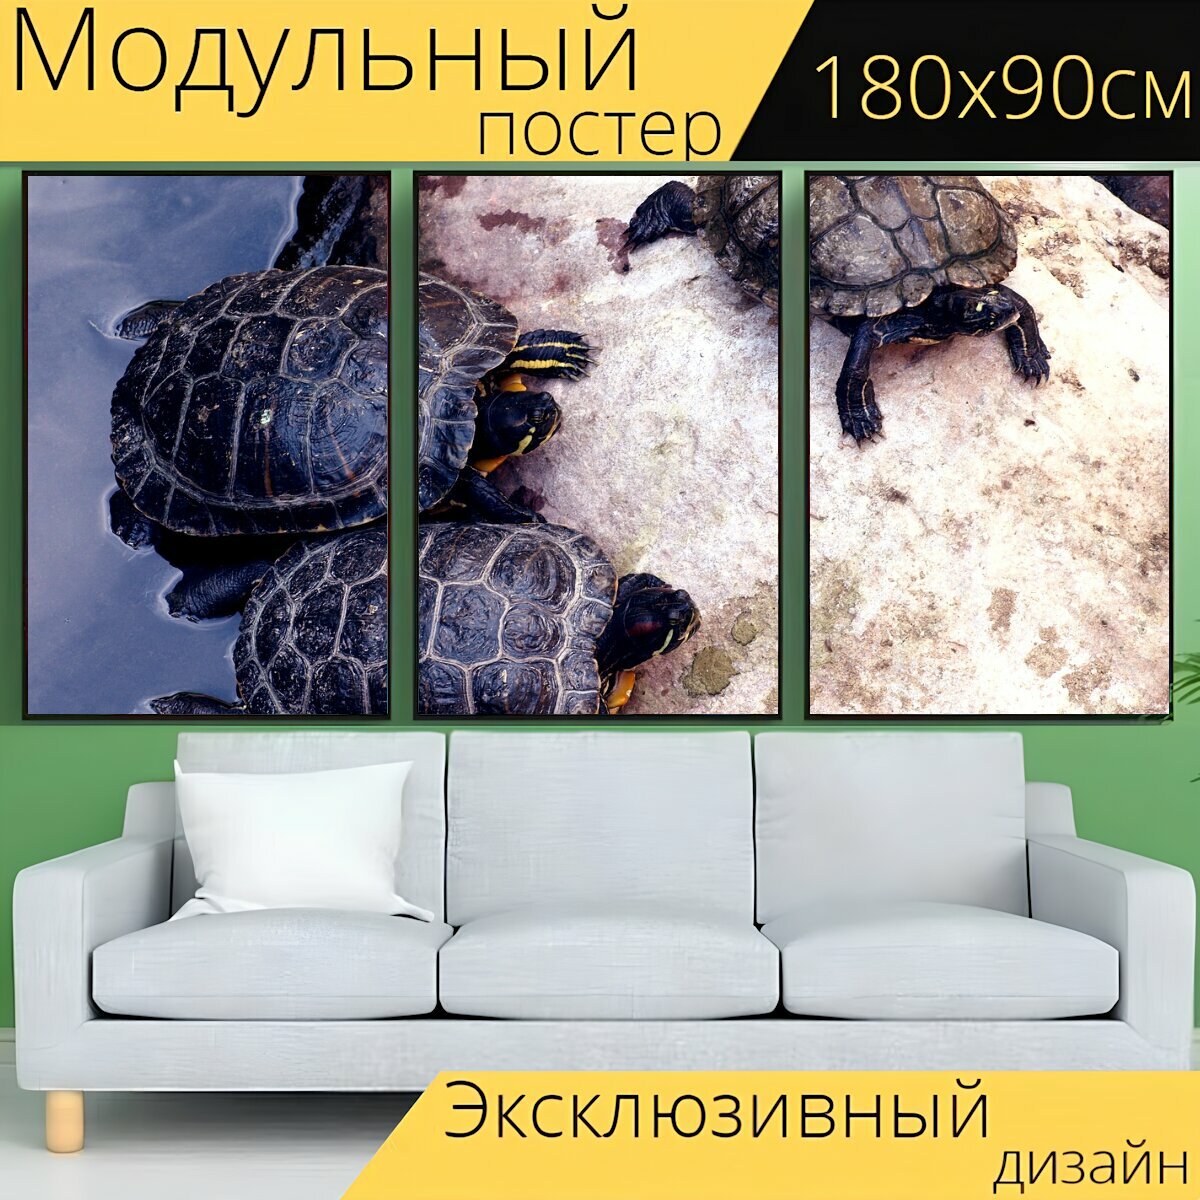 Модульный постер "Черепаха, природа, дикая природа" 180 x 90 см. для интерьера